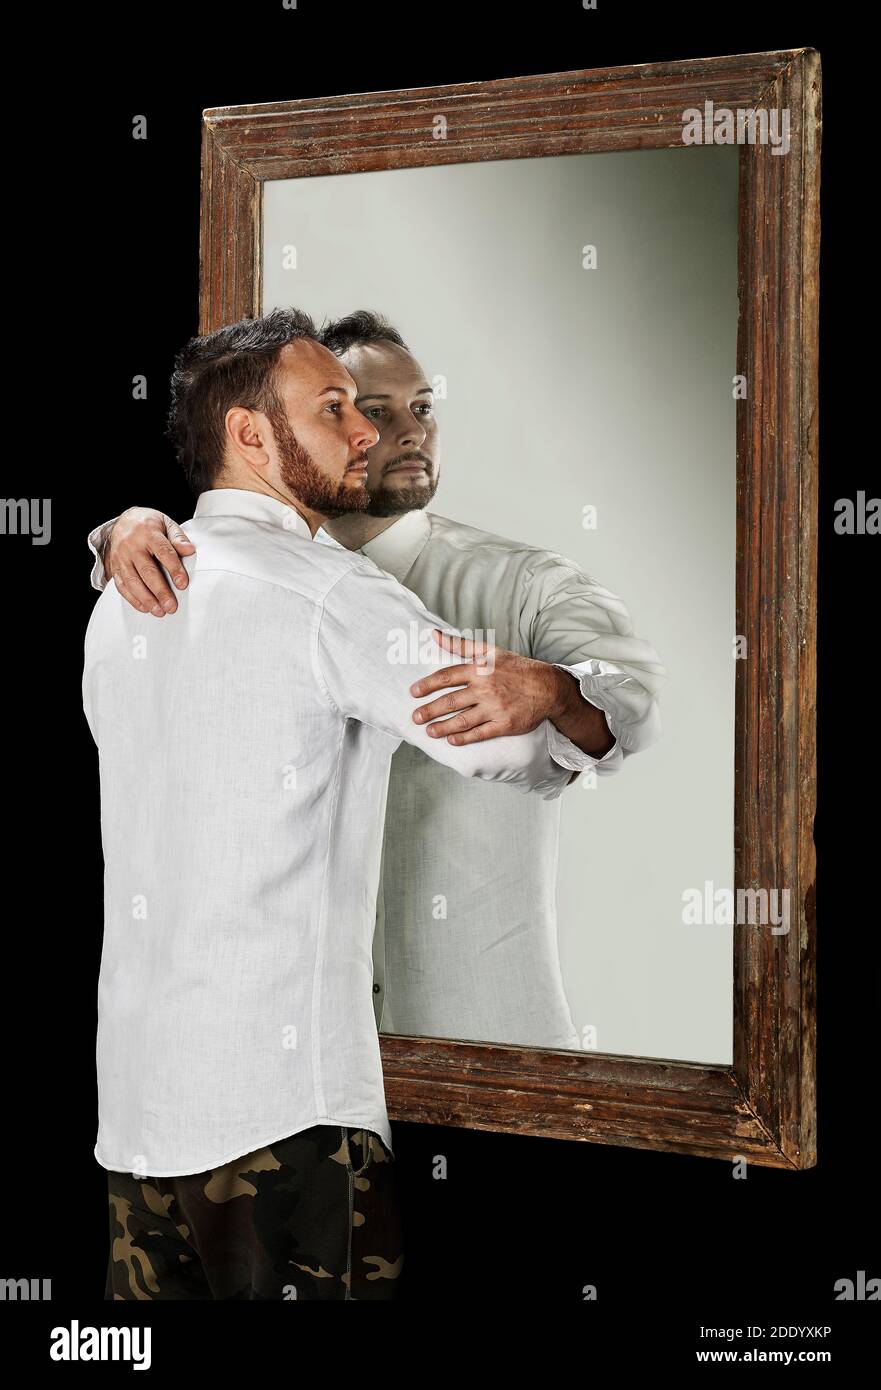 L'homme dans le miroir embrasse sa réflexion Photo Stock - Alamy